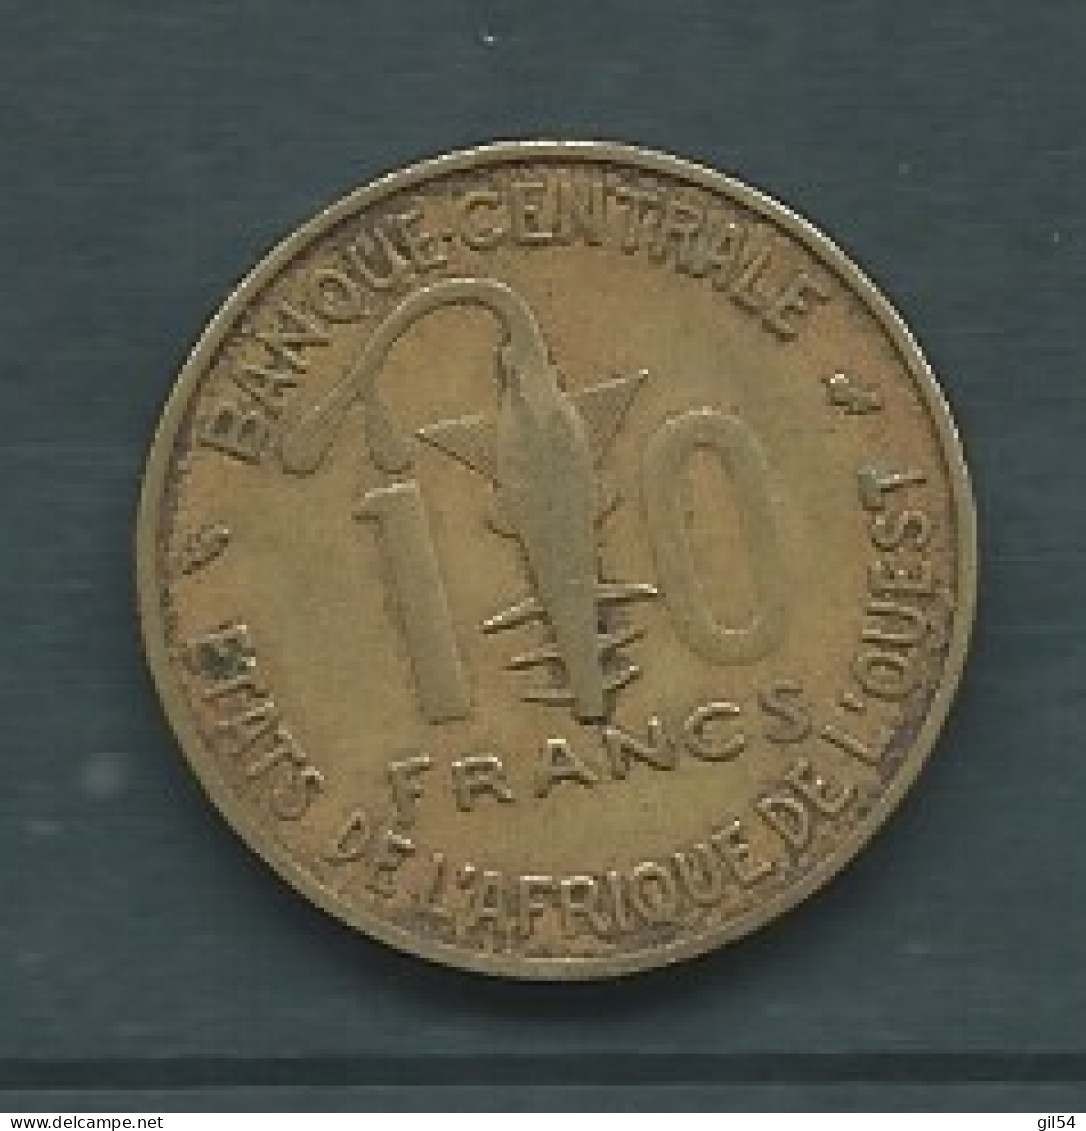 Afrique De L'Ouest - 10 Francs 1970  Pieb 25206 - Other - Africa